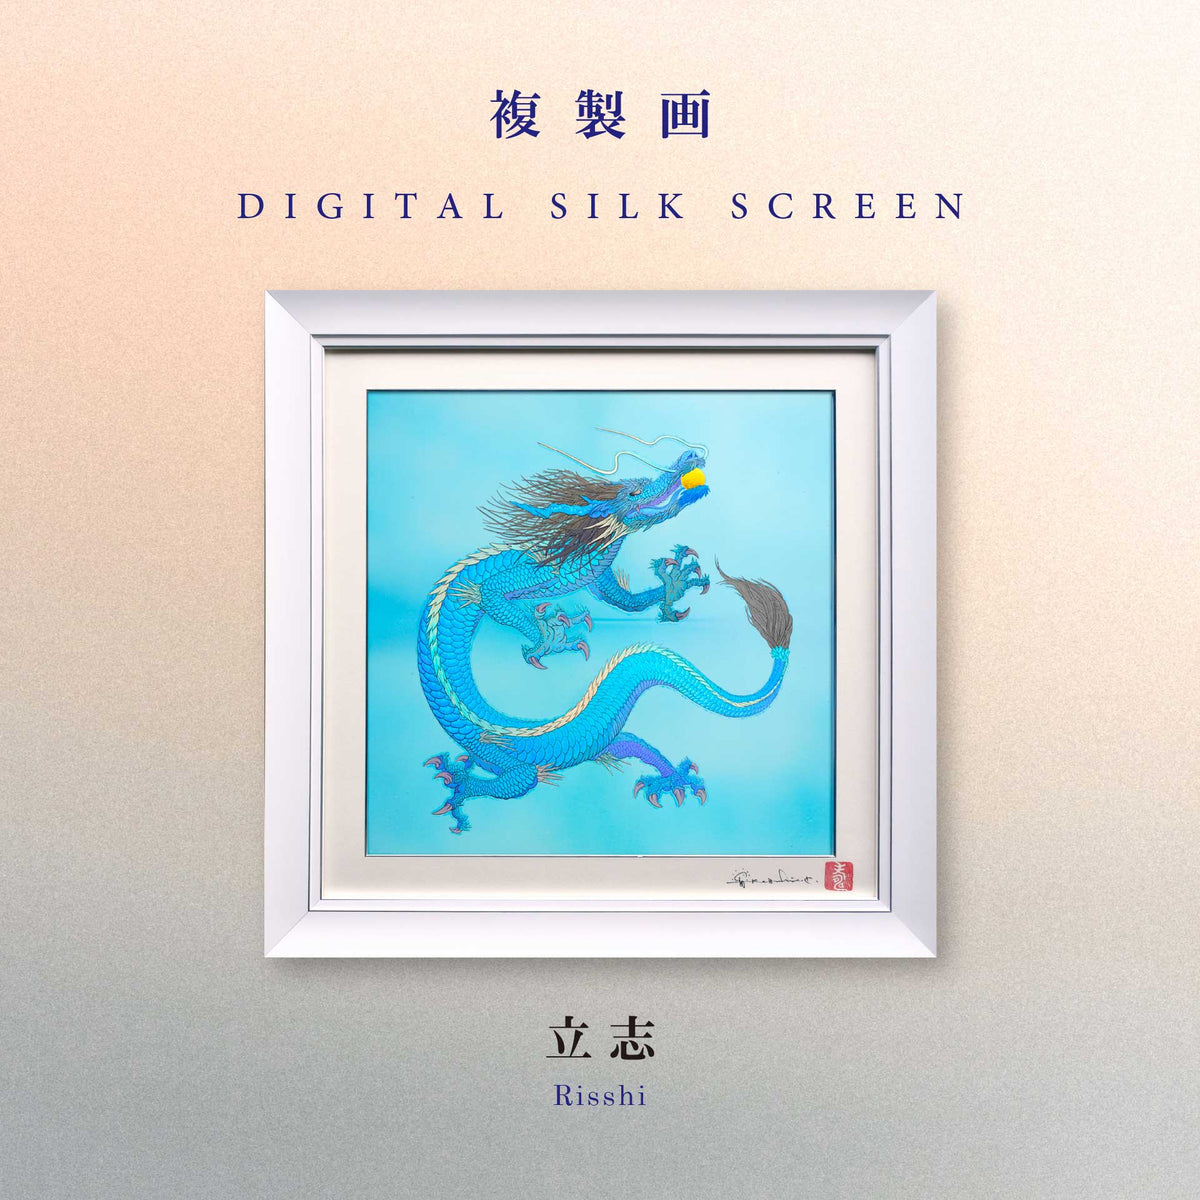 複製画・デジタルシルクスクリーン「立志」 – 草場一壽工房 Museum Shop